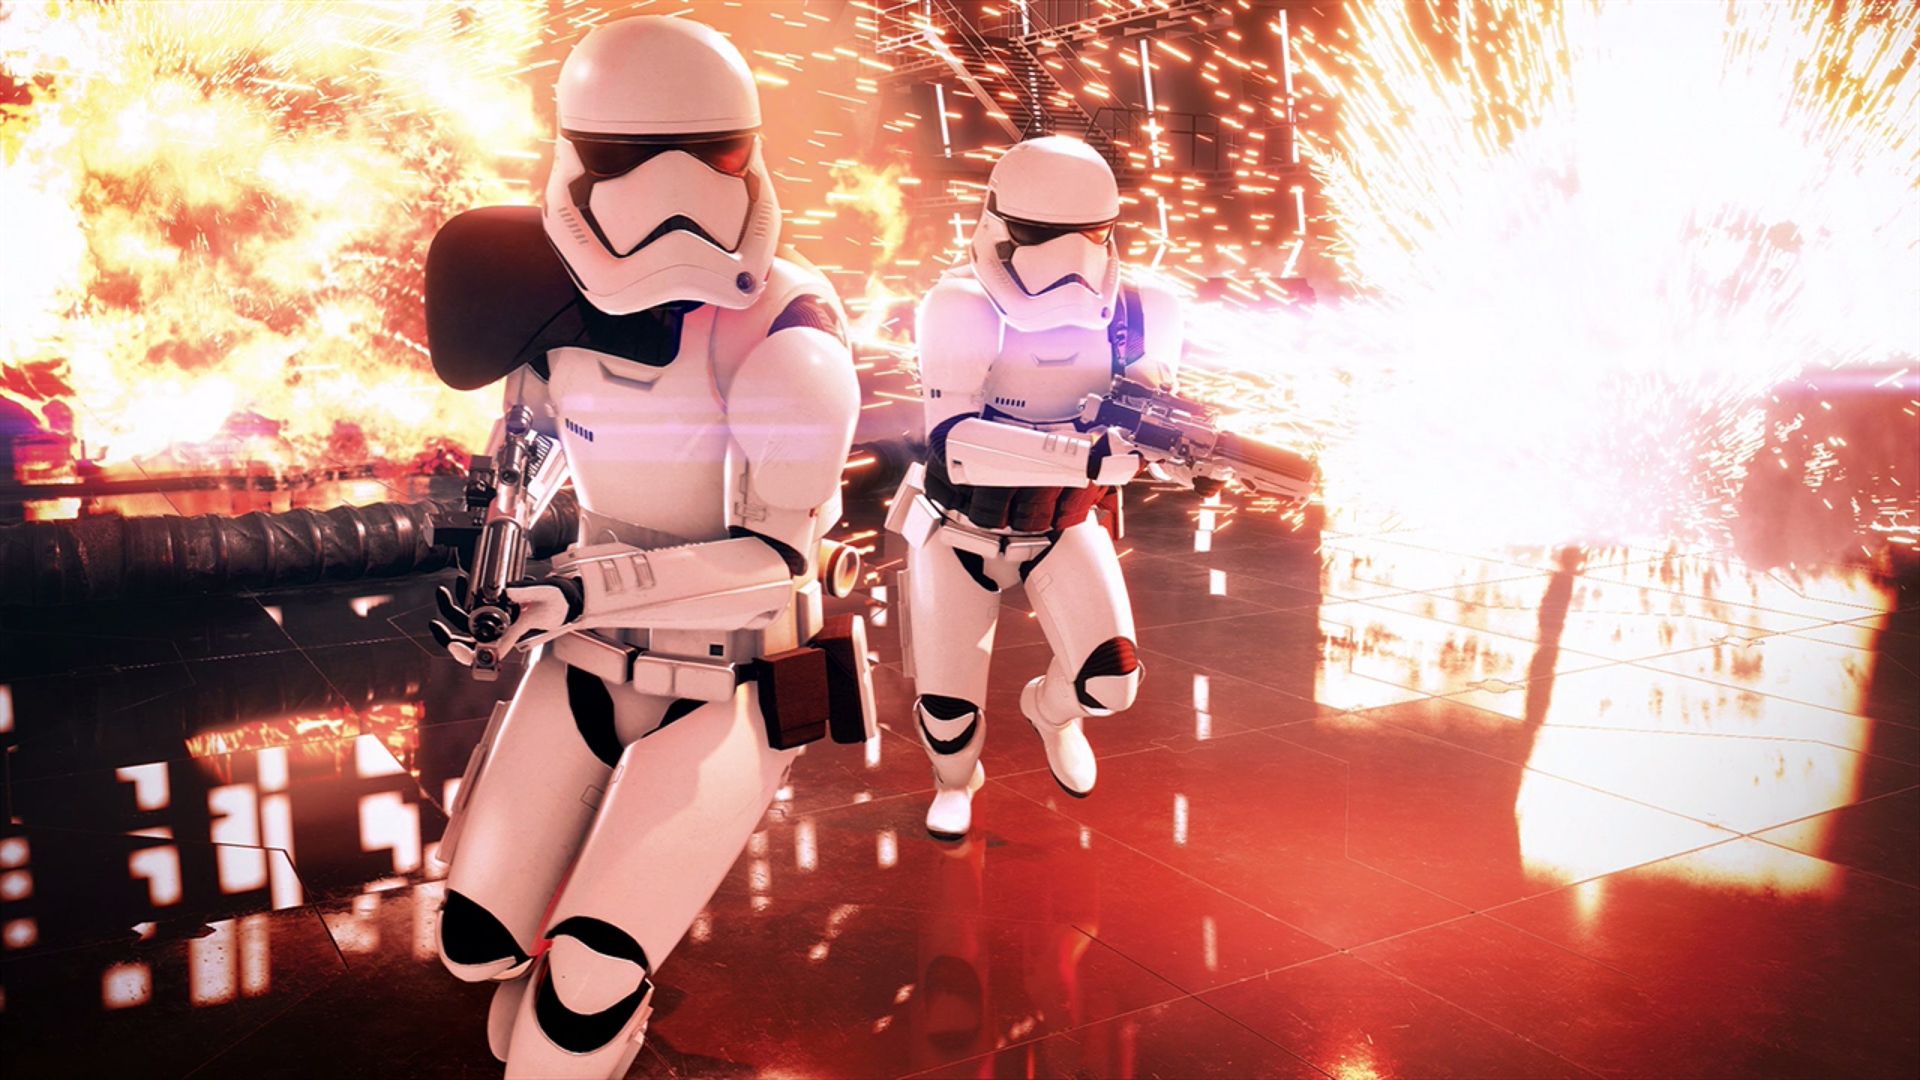 Star Wars Battlefront II Stormtroopers